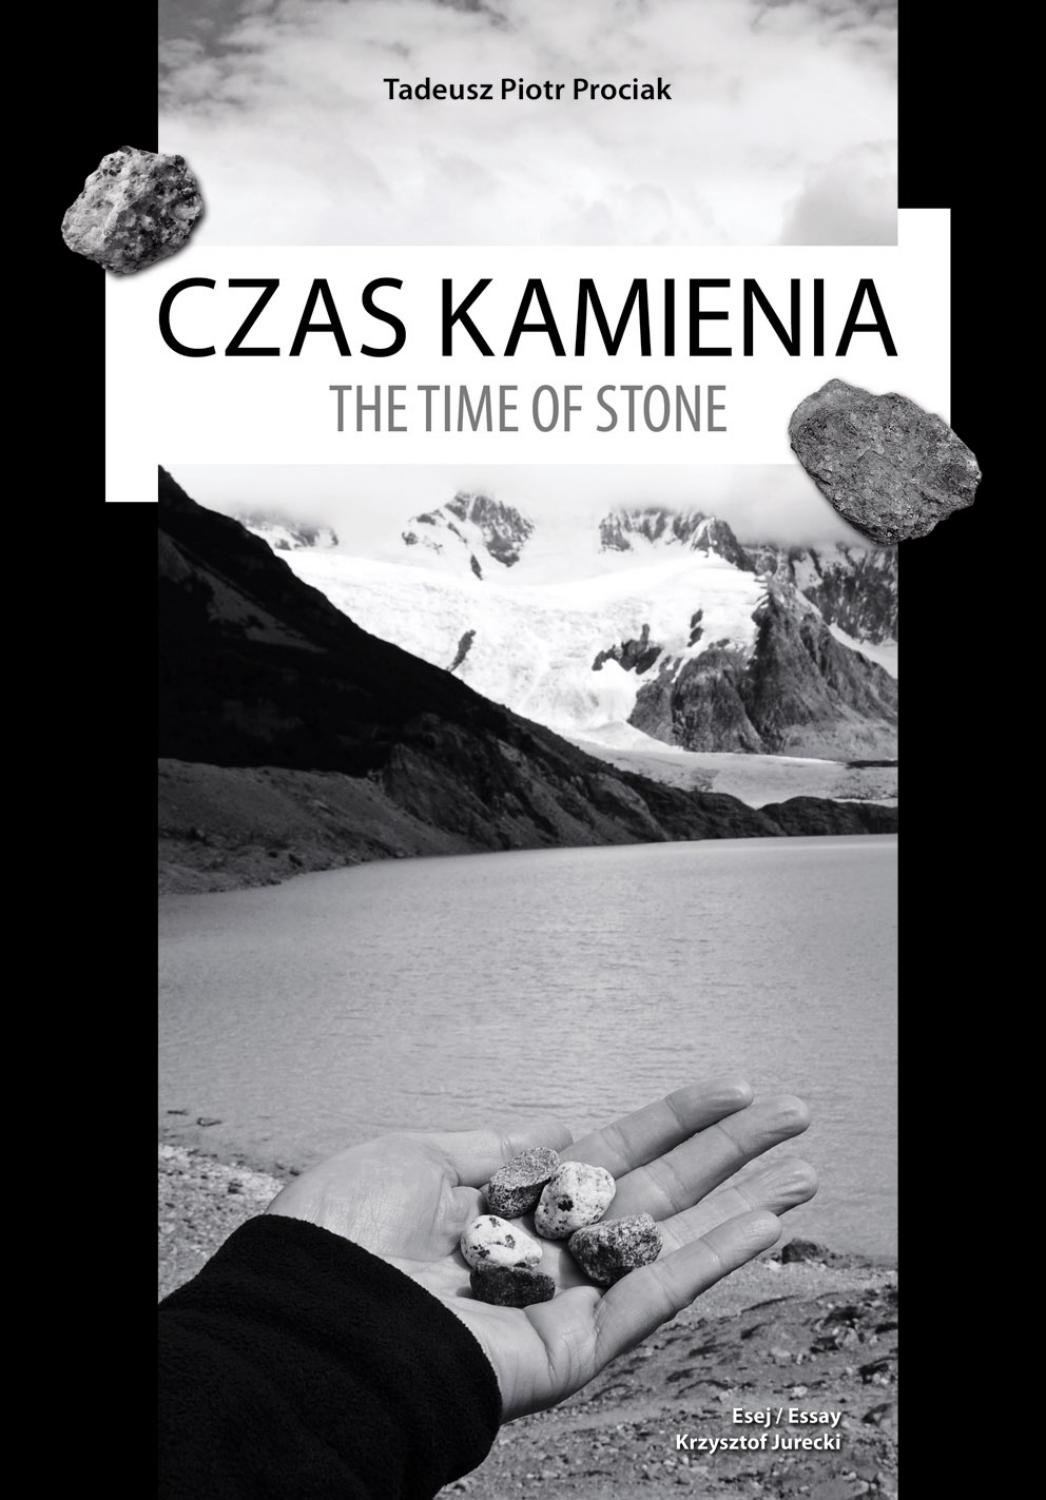 Tadeusz Prociak, okładka albumu „Czas kamienia”, 2016 (źródło: dzięki uprzejmości artysty)